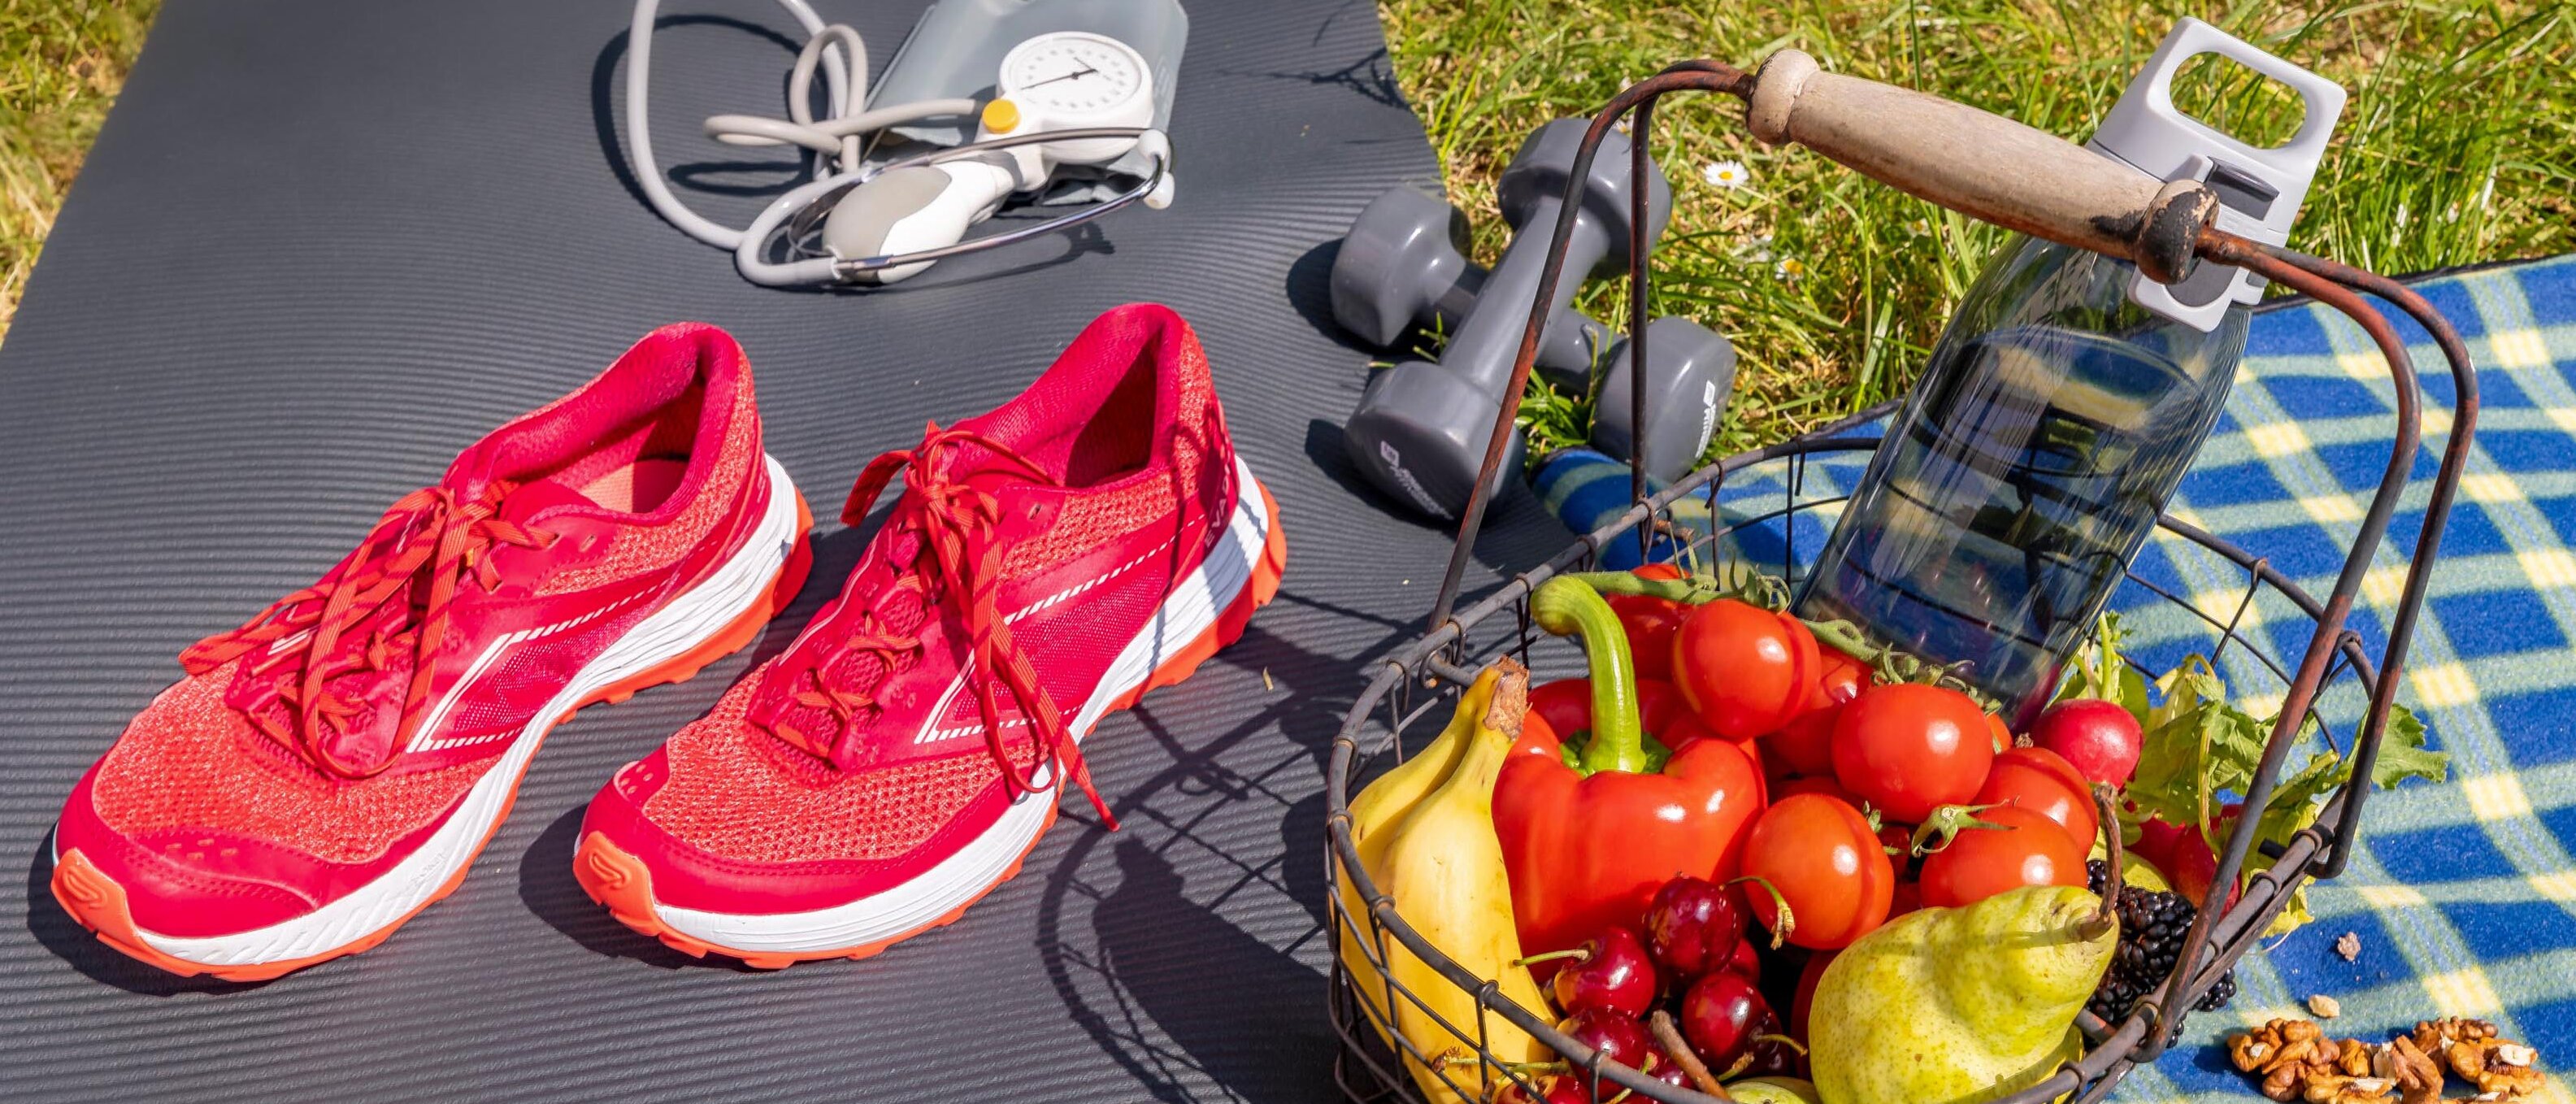 Yogamatte und Picknickdecke mit Laufschuhen, Stethoskop sowie Obst- und Gemüsekorb und Wasserflasche